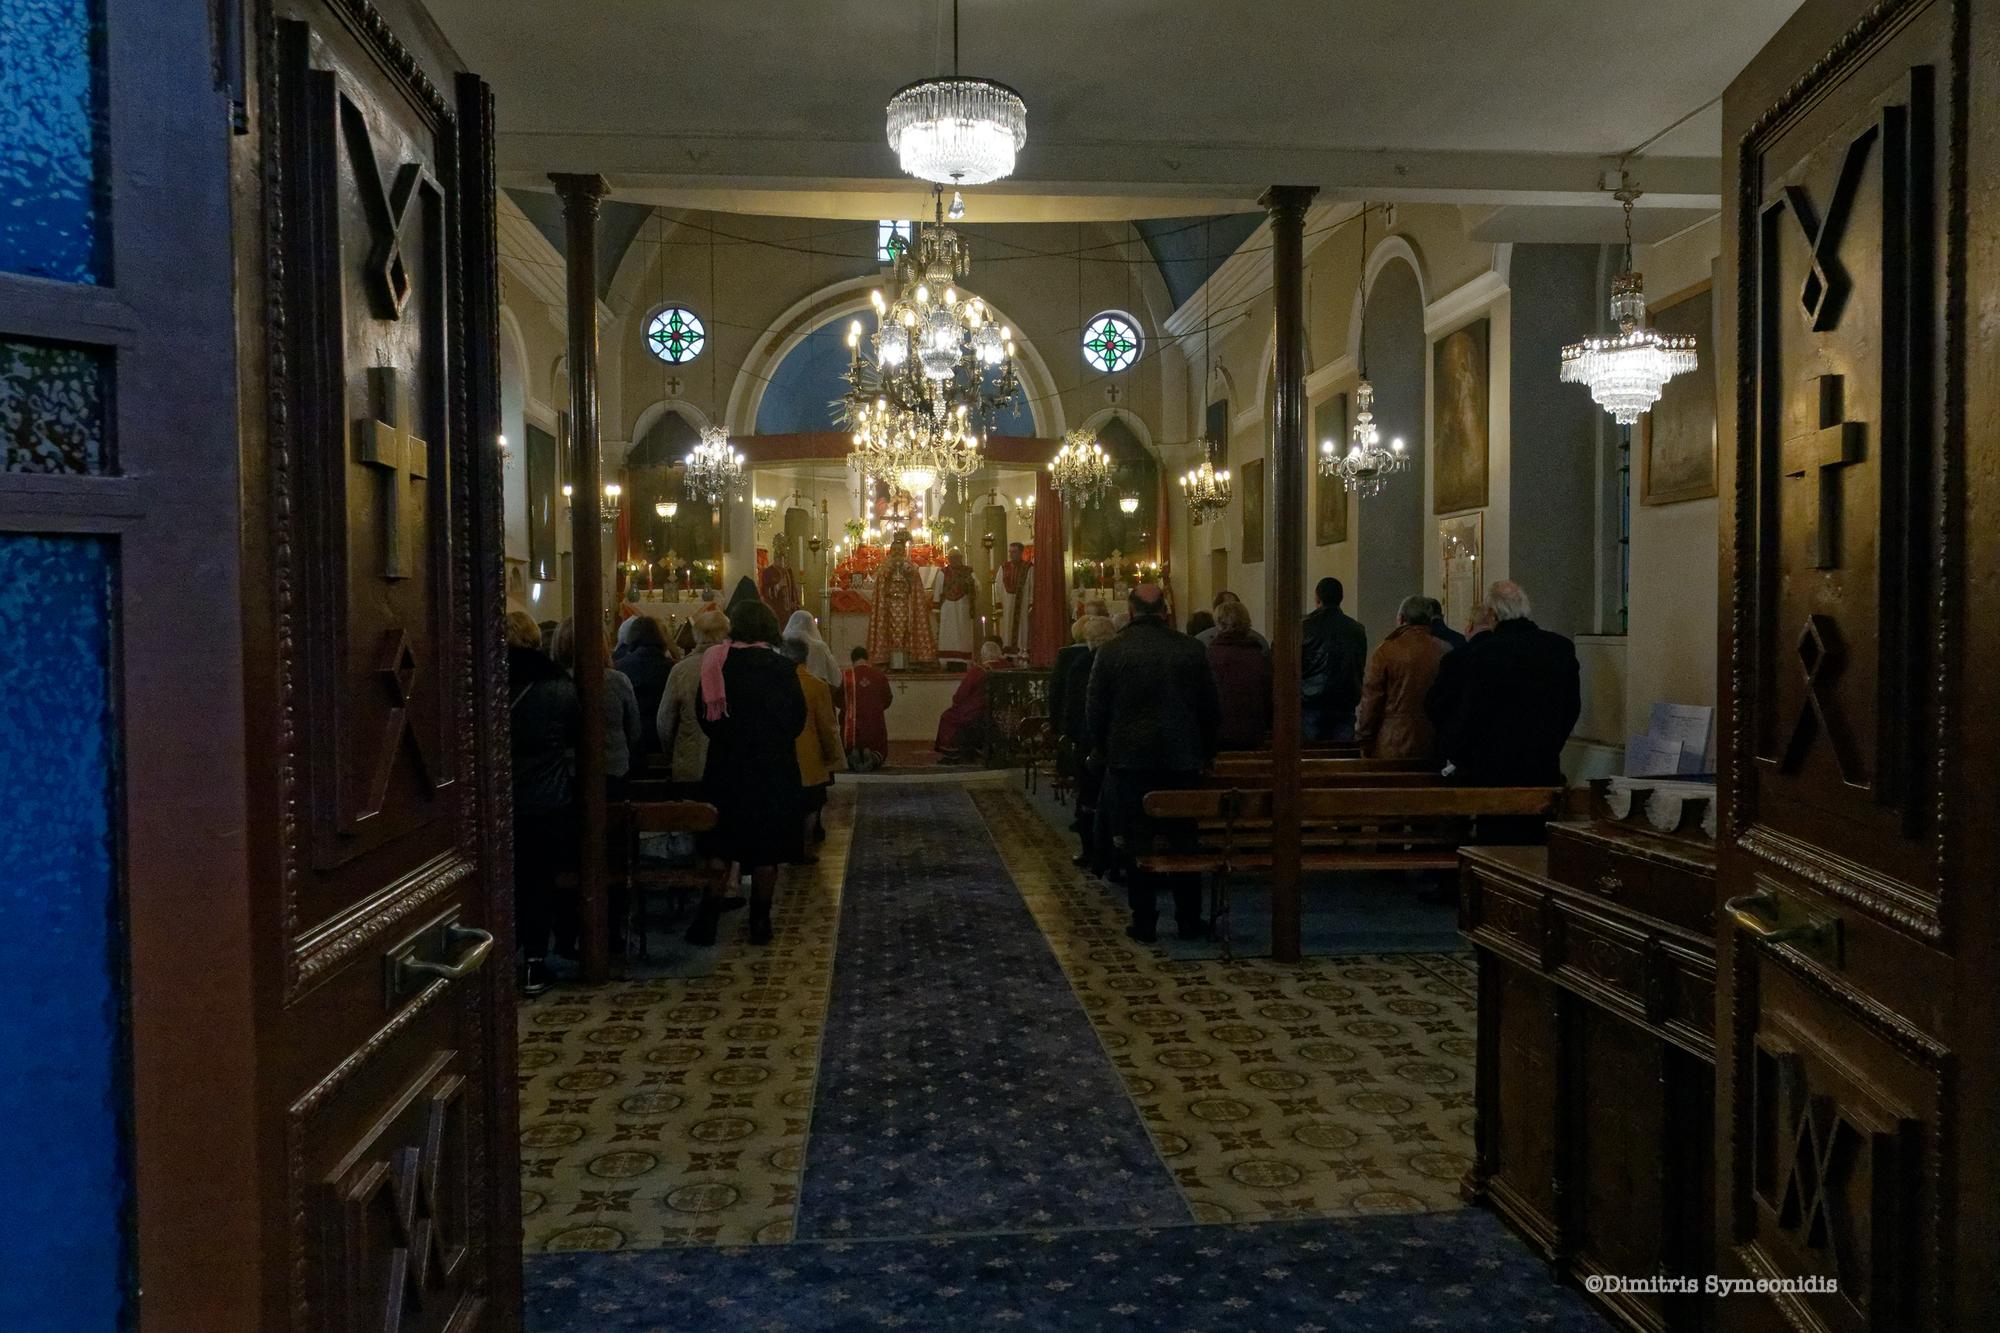 Αρμένικη Εκκλησία στη Θεσσαλονίκη, δημιουργία του Vitaliano Poselli